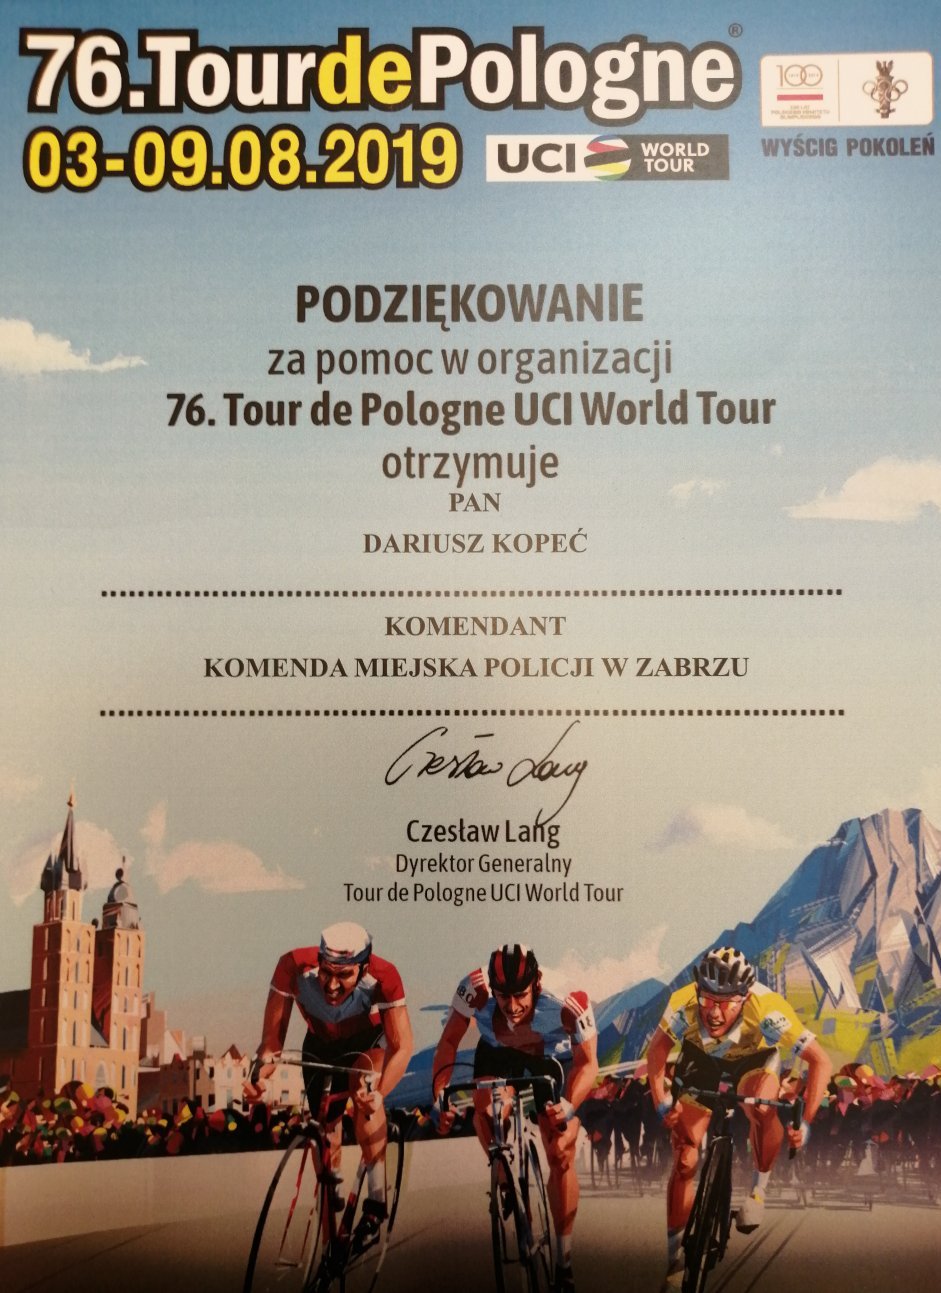 podziękowania za pomoc i wsparcie podczas organizacji 76. Tour de Pologne